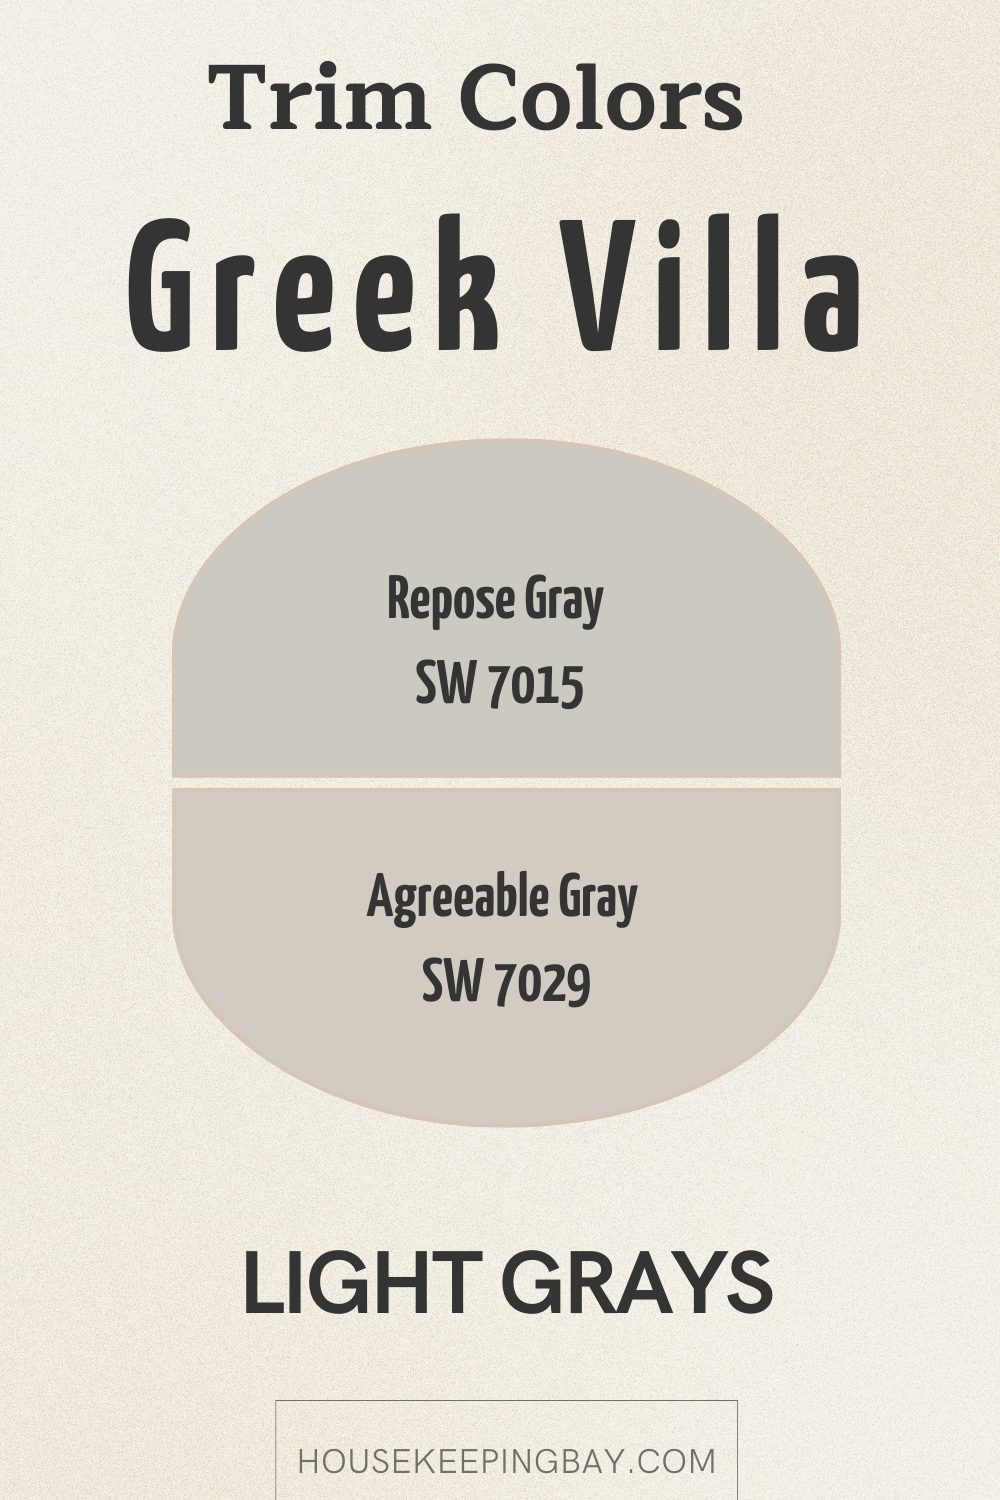 Greek villa trim colors warm whites